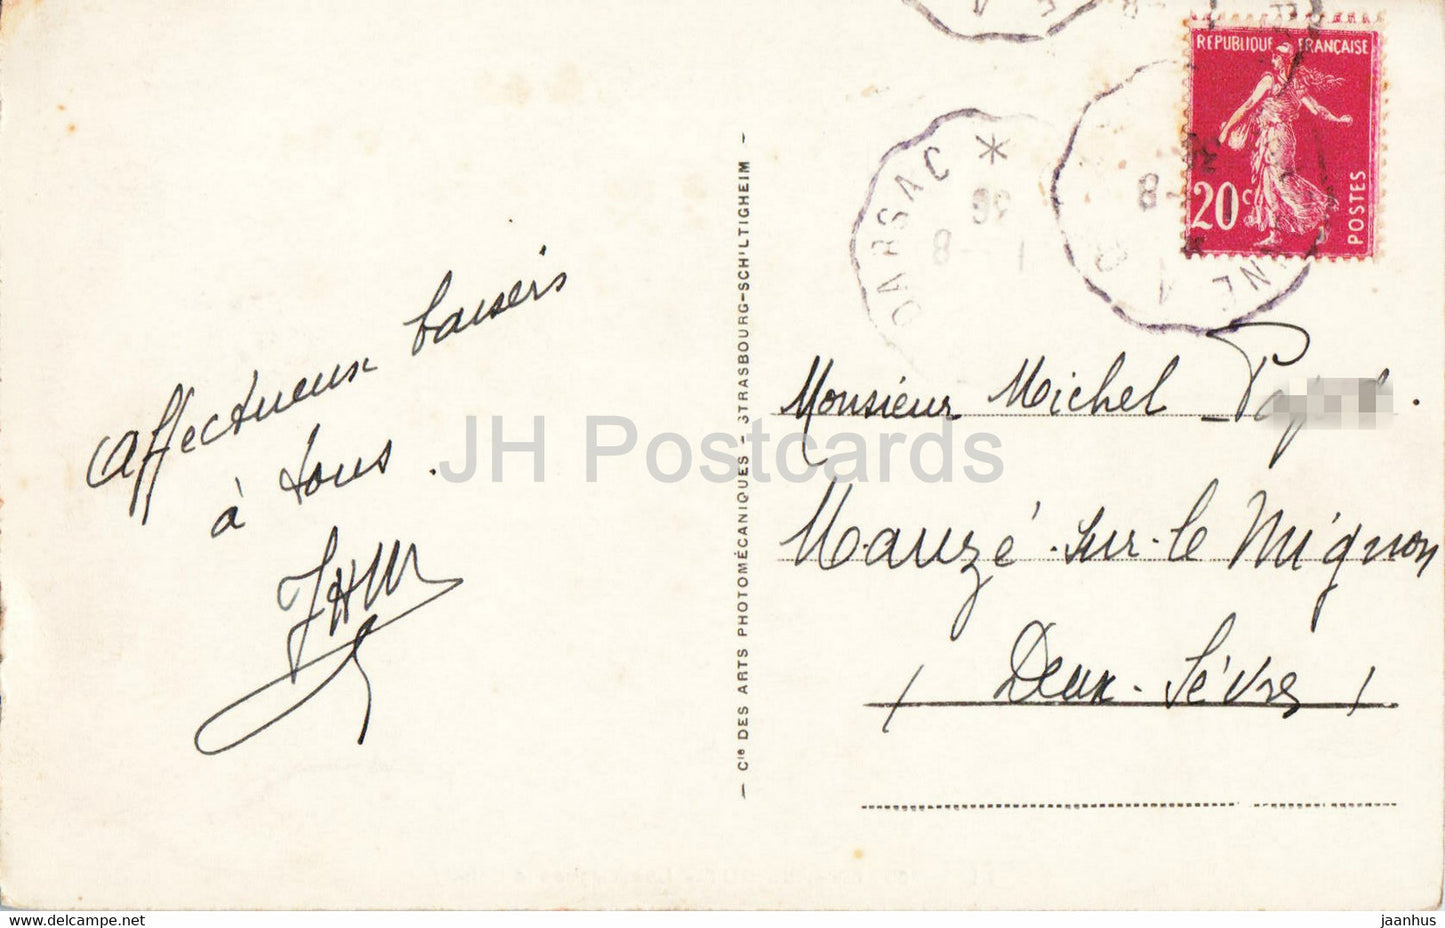 Env du Puy - Les Orgues d'Espaly - 106 - carte postale ancienne - années 1930 - France - occasion